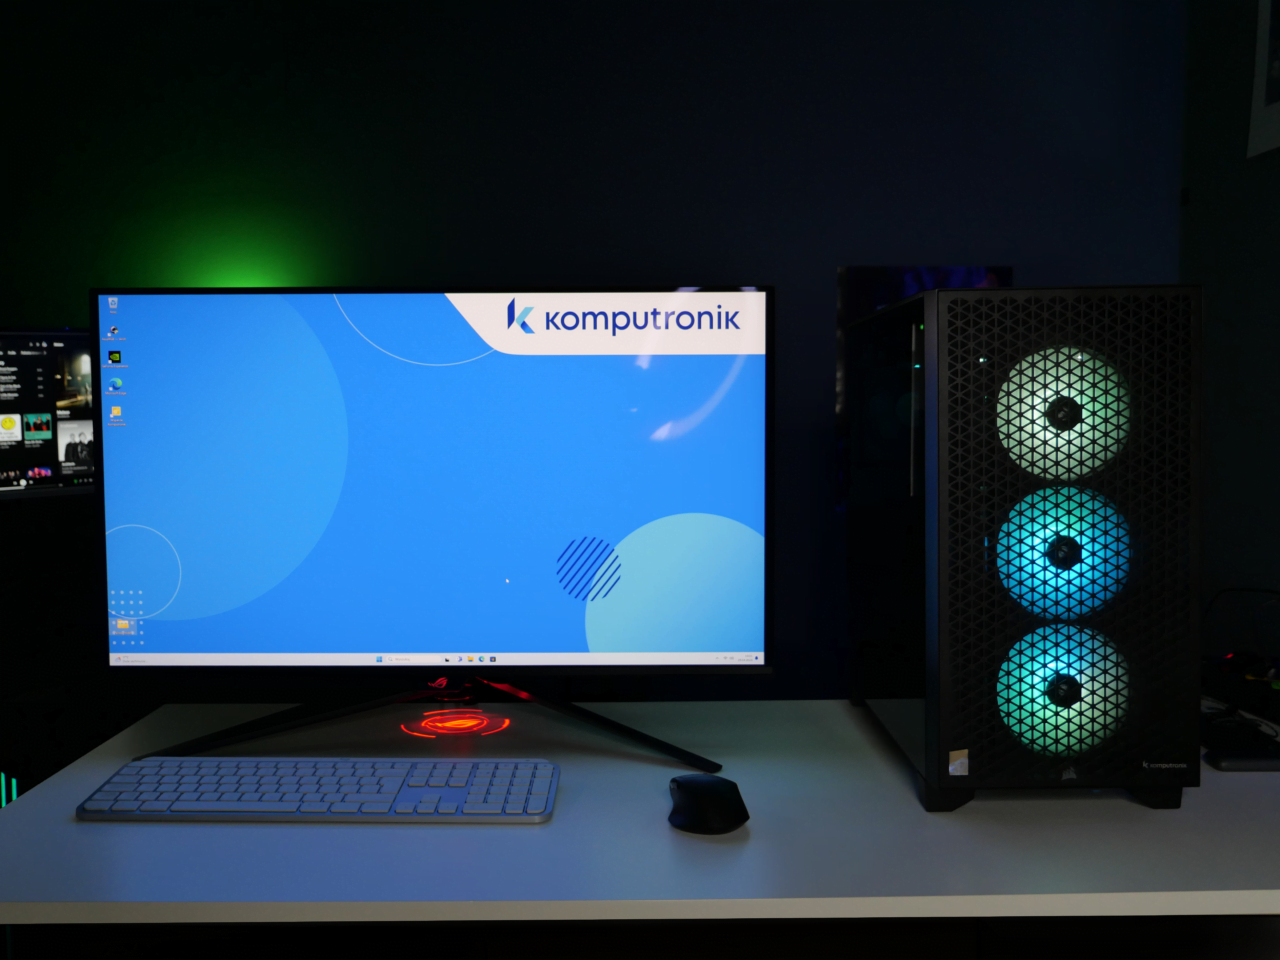 Komputer stacjonarny z podświetlaną obudową i monitor na pulpicie z logo Komputronik, klawiatura i mysz na biurku, zielone podświetlenie w tle.